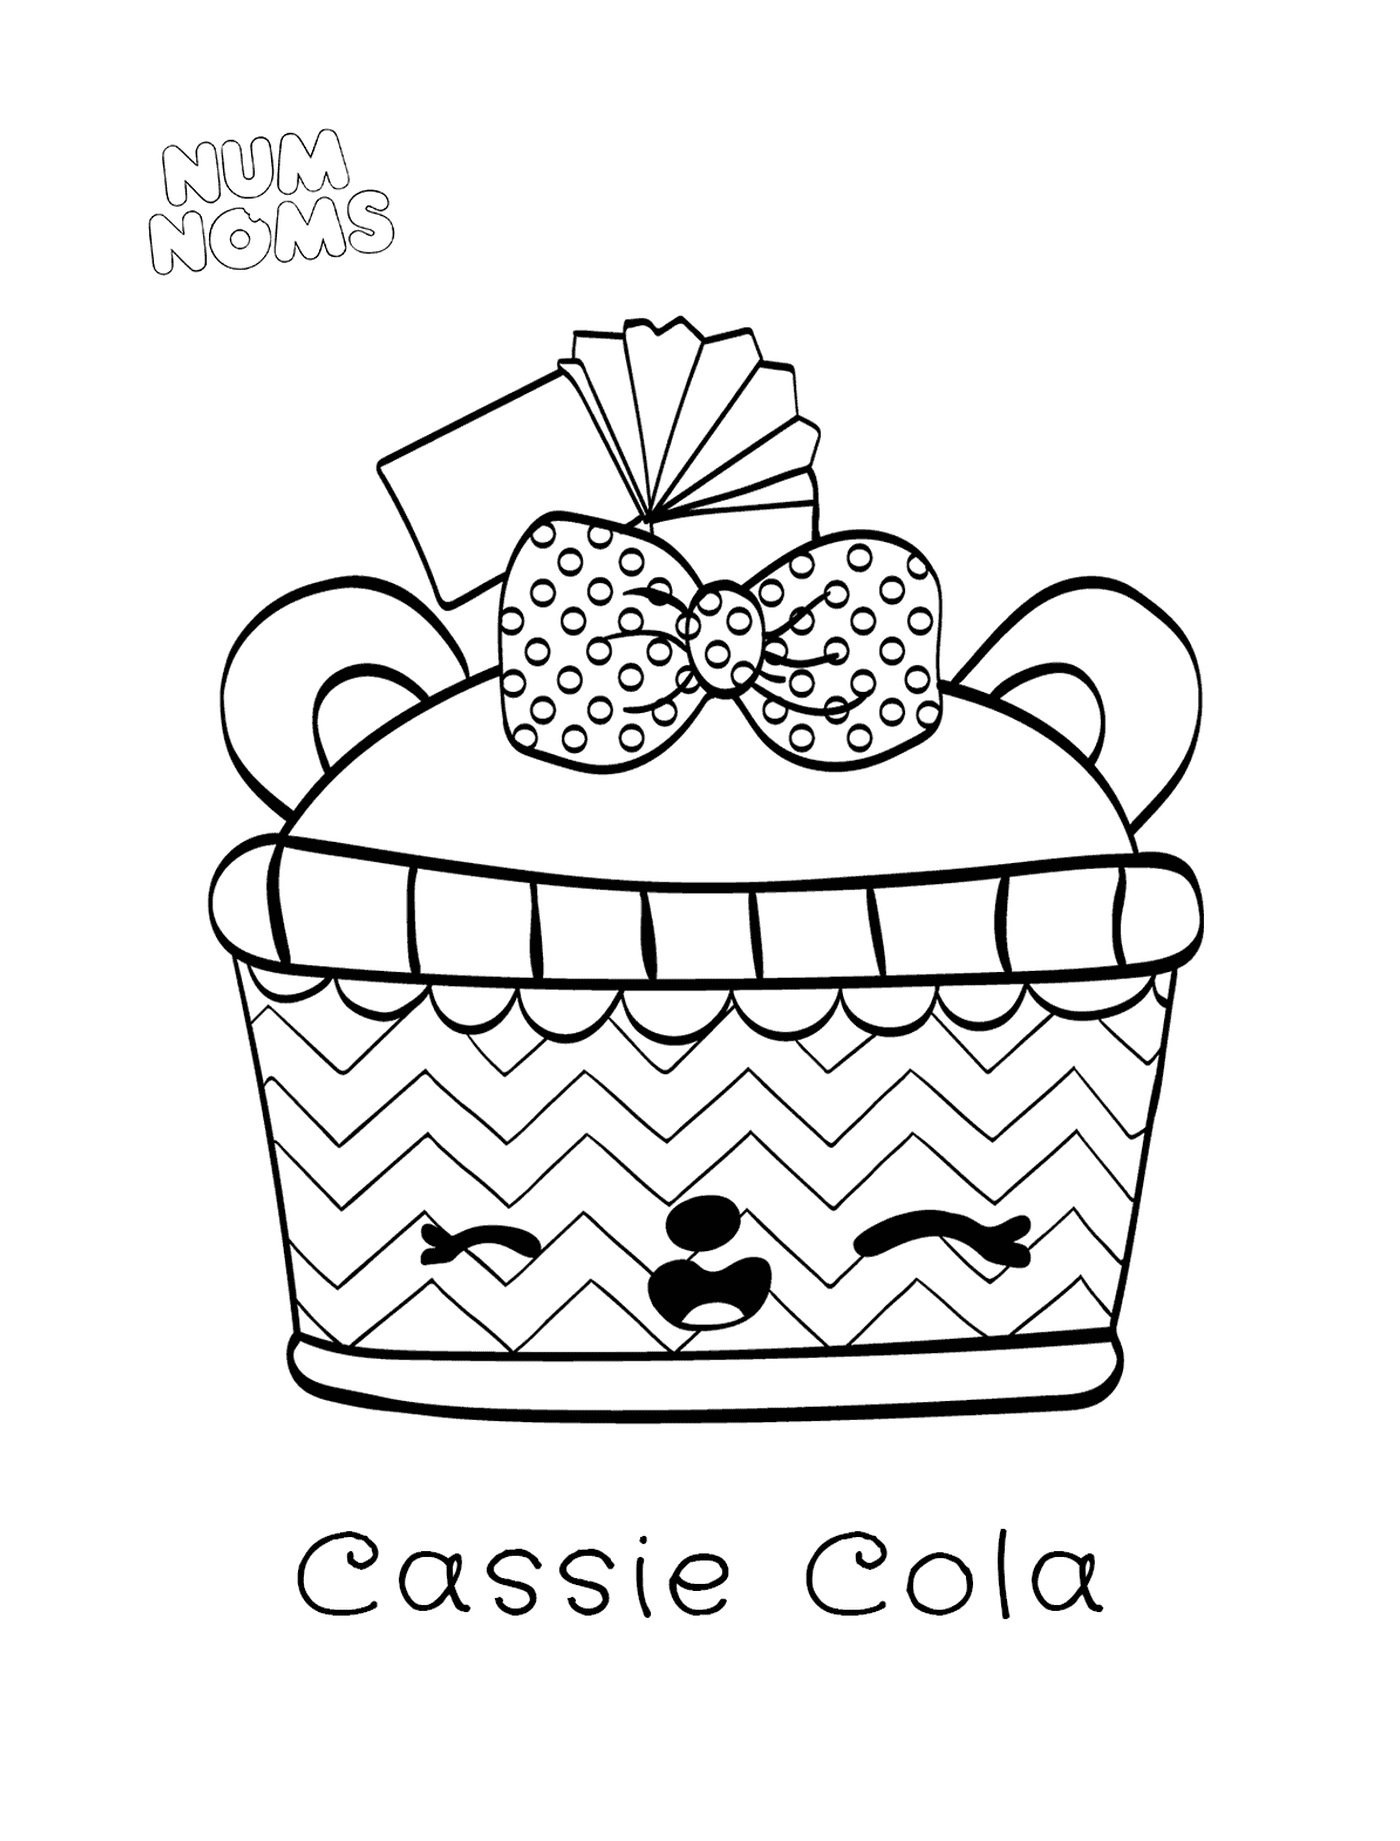  Cassie Cola 颜色页面 